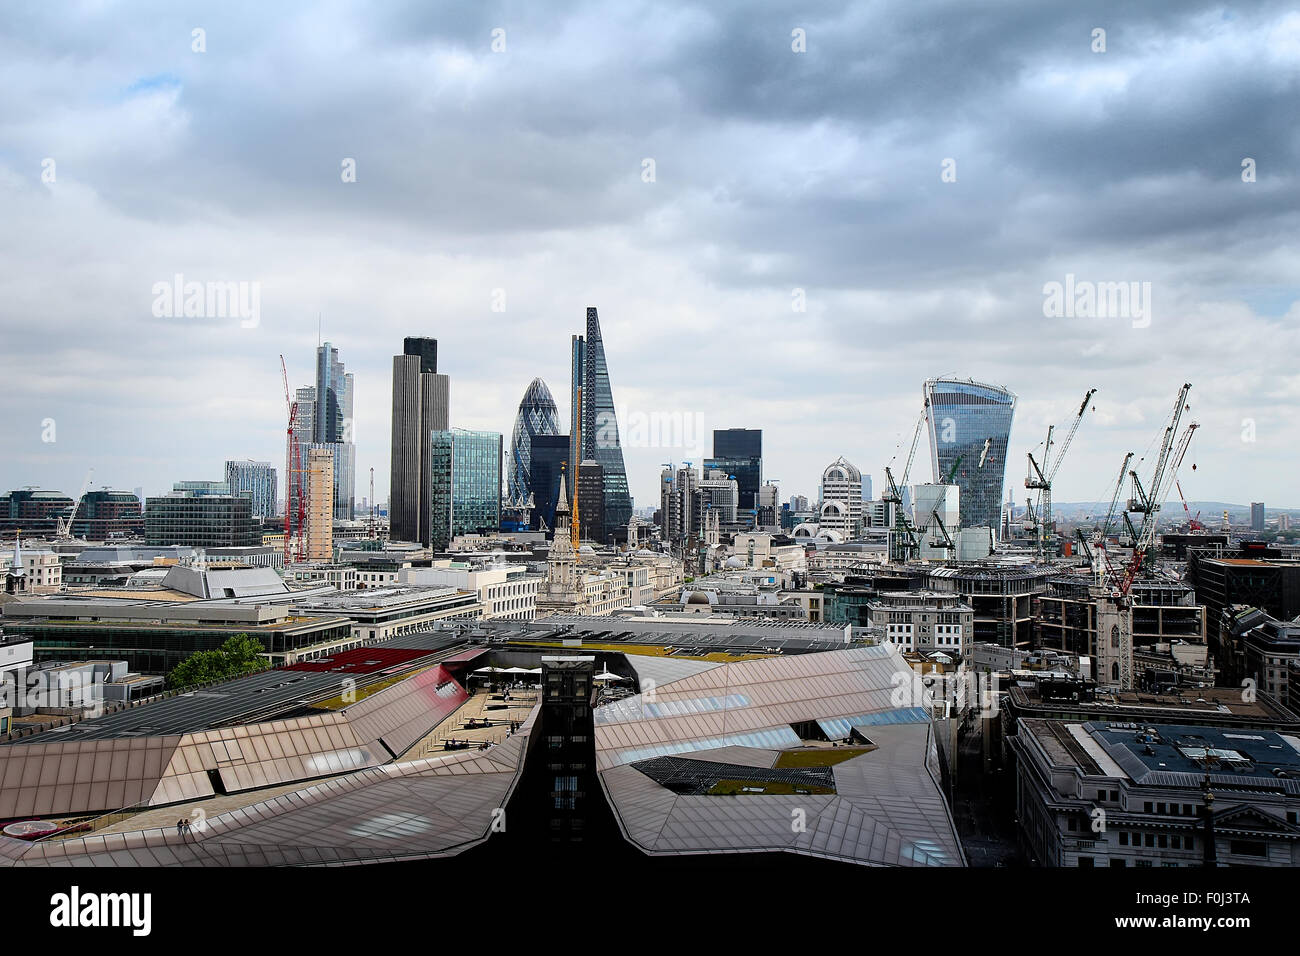 Londres, Royaume-Uni - 25 MAI 2015 : Quartier financier de Londres, Royaume-Uni, le 25 mai, 2015. Banque D'Images